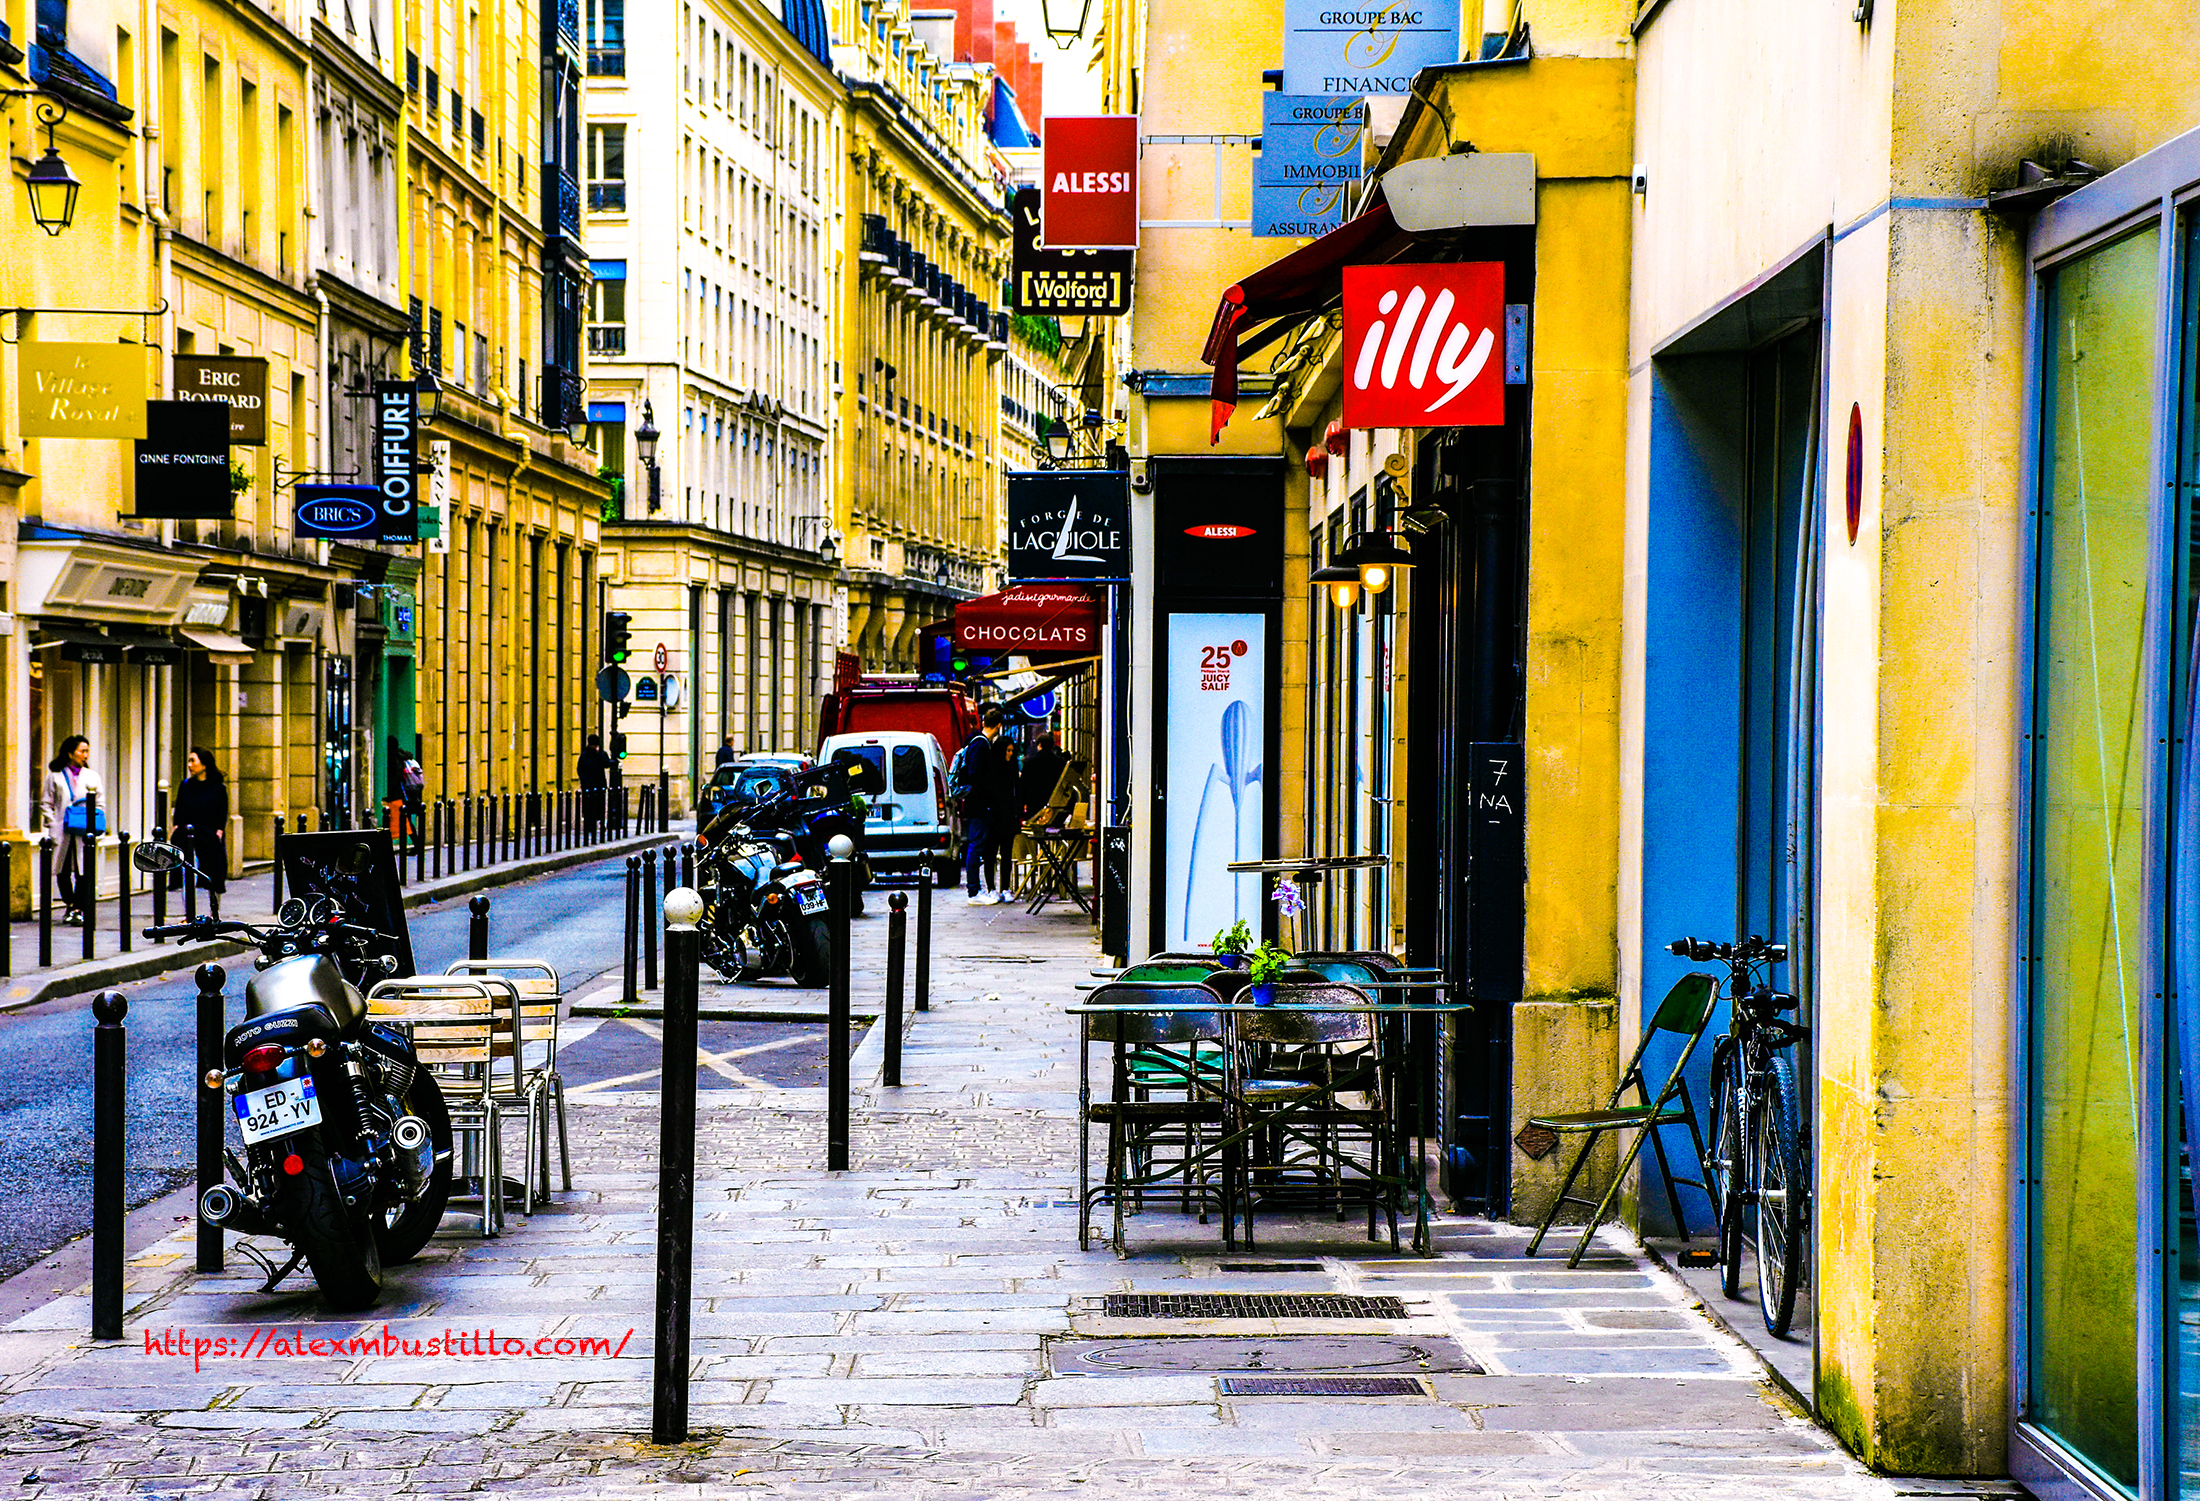 Café & Promenade, Rue Boissy d'Anglas, 75008 Paris, France